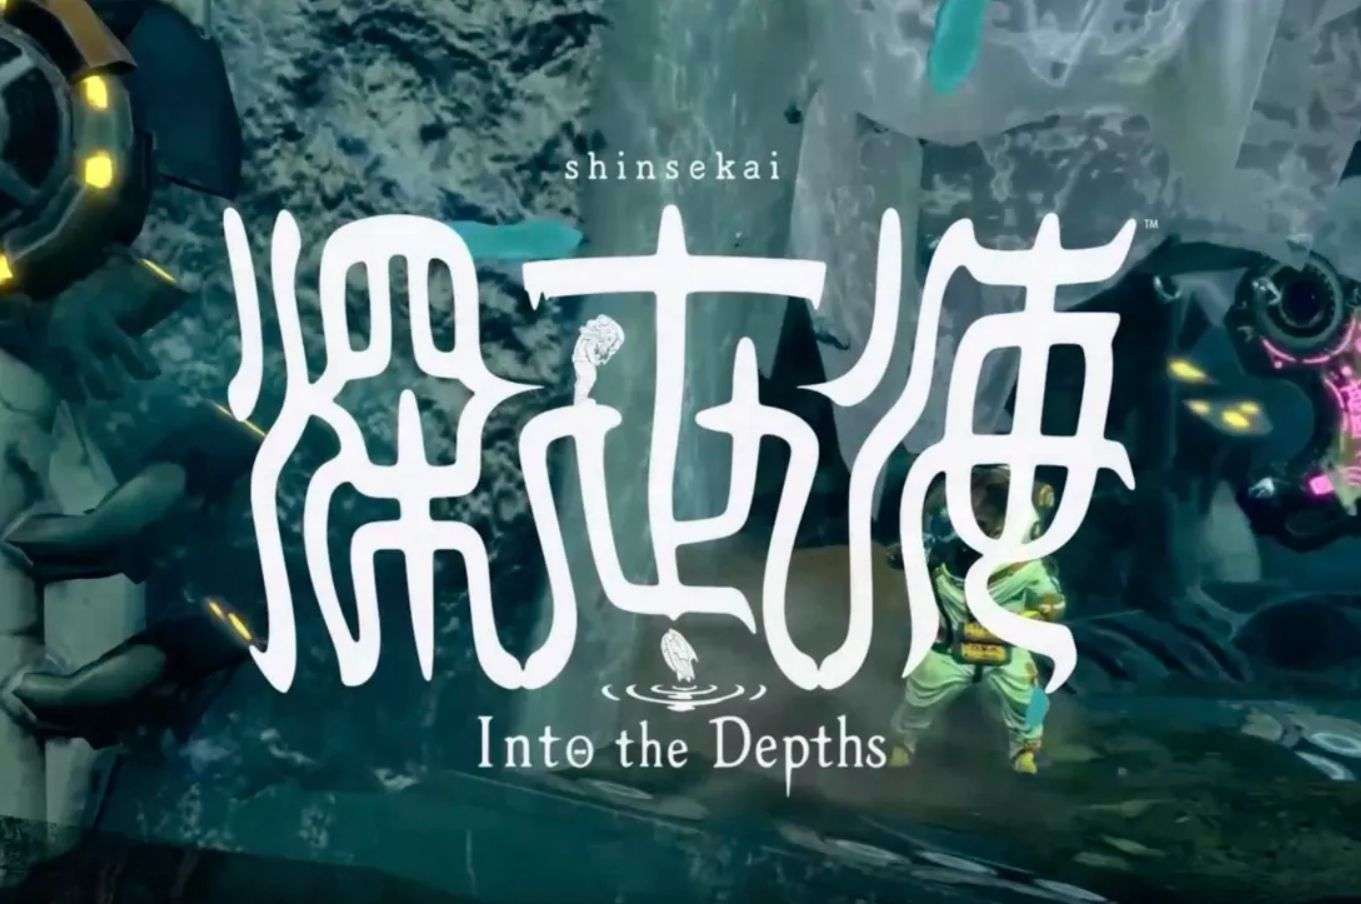 Shinsekai: Into the Depths